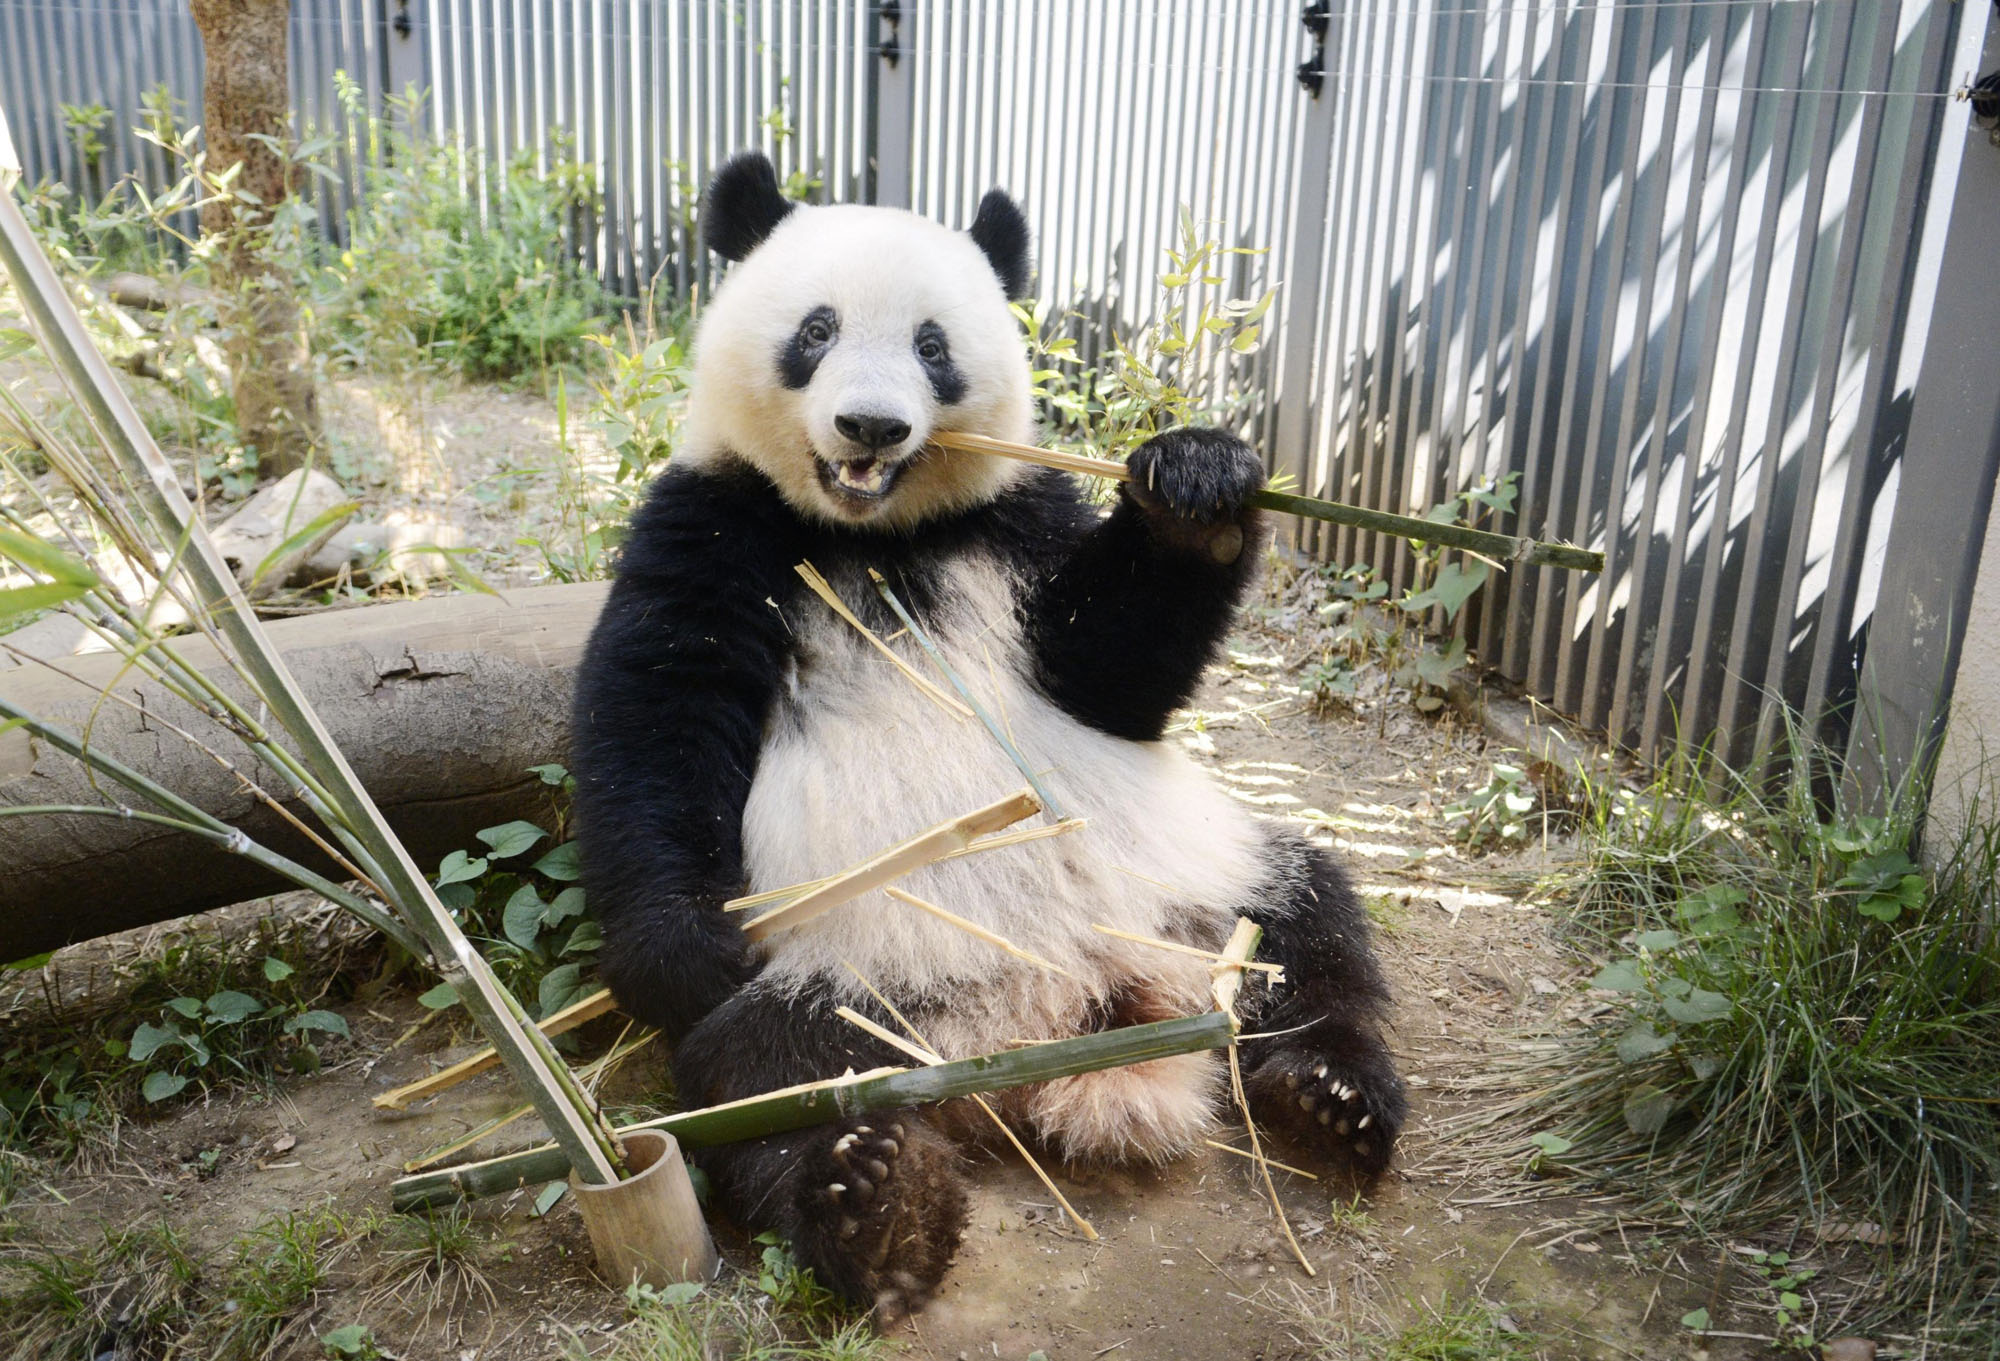 Xiang Xiang, a giant panda cub living at Tokyo's Ueno Zoo, eats bamboo last month. | UENO ZOOLOGICAL GARDENS / VIA KYODO